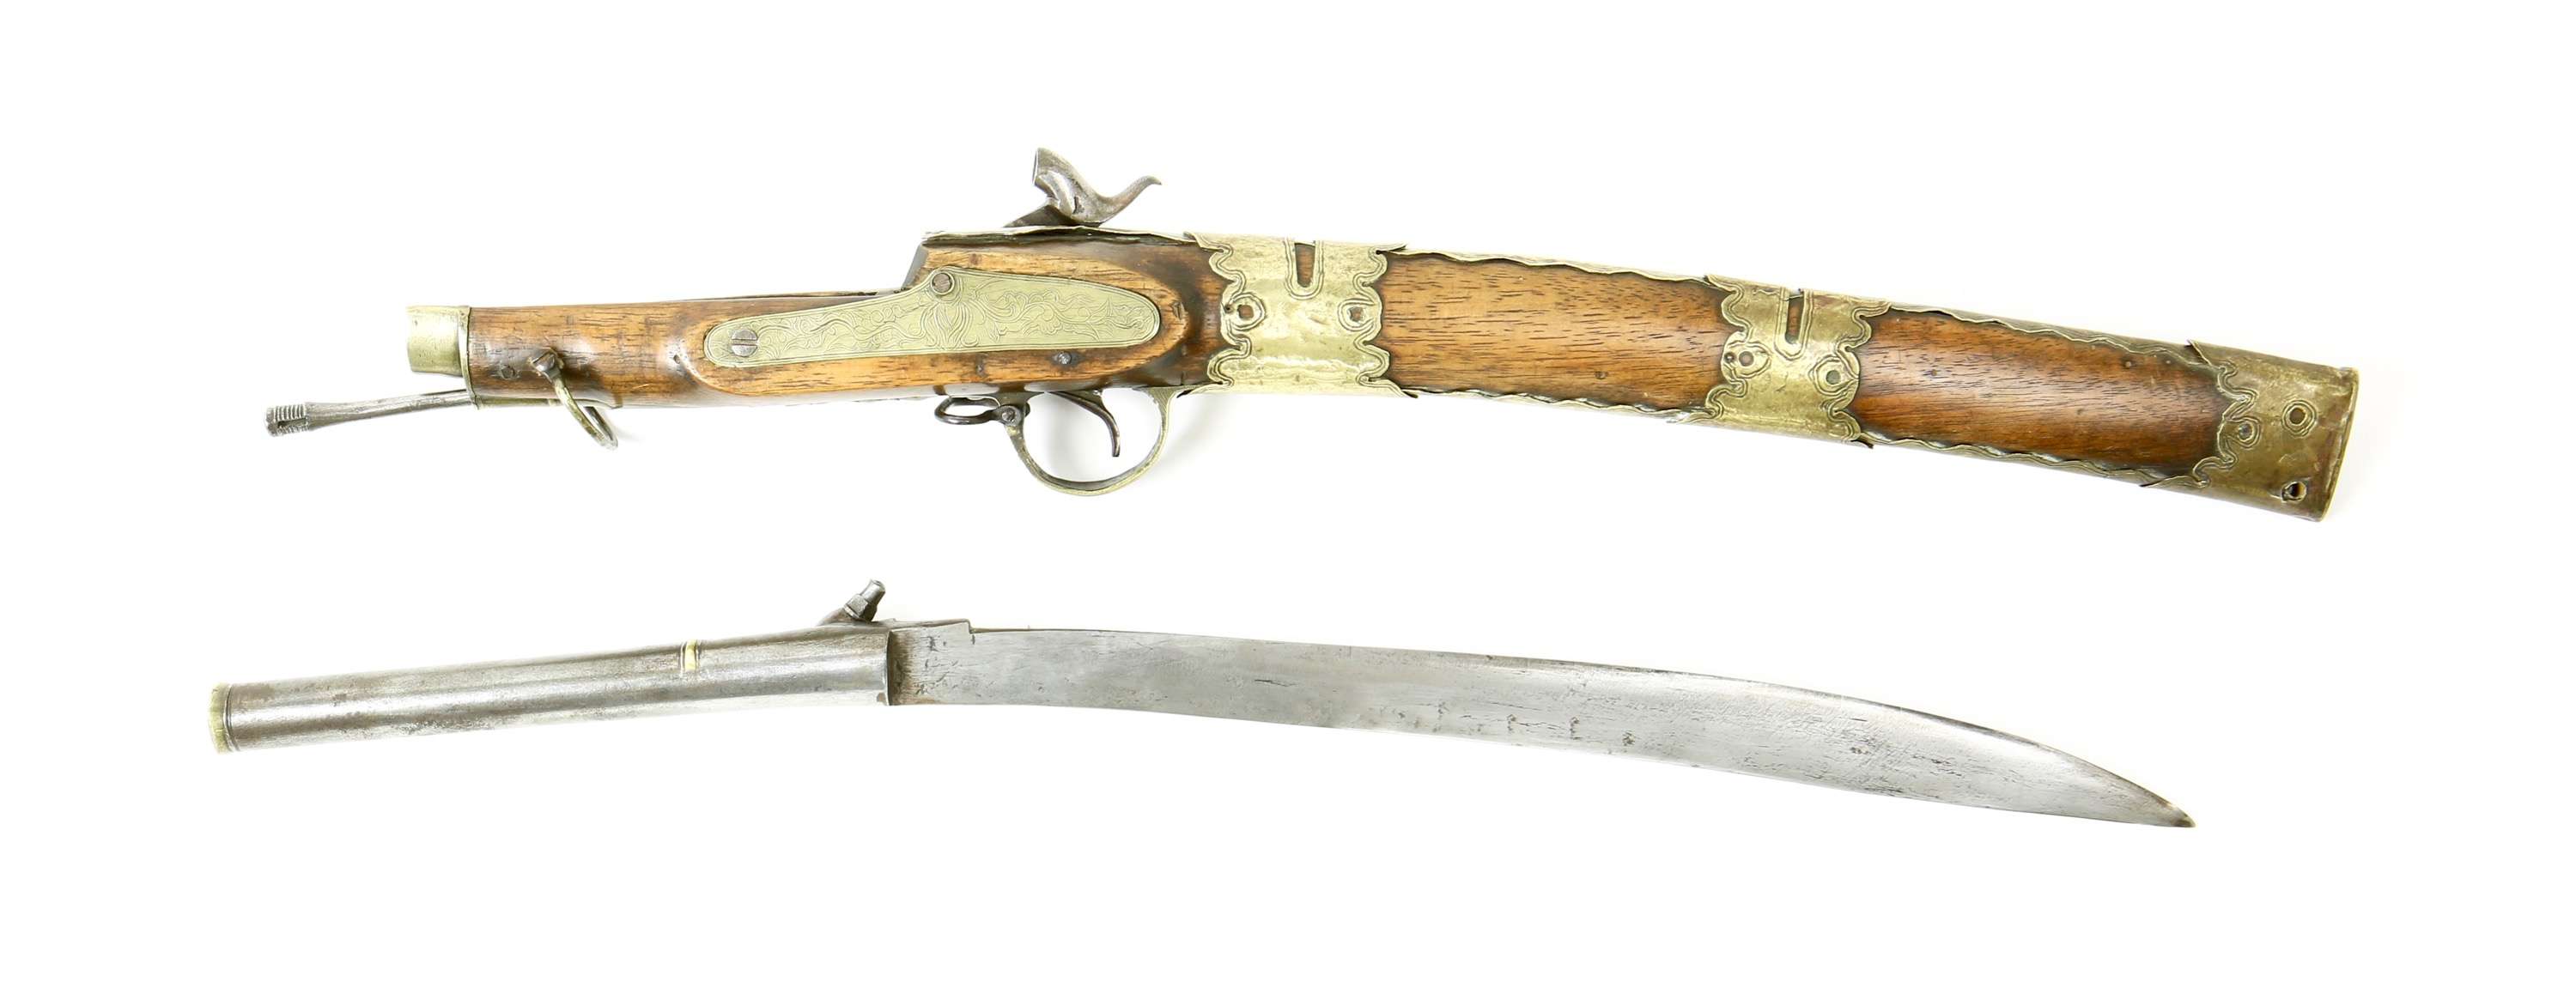 Burmese sword carbine